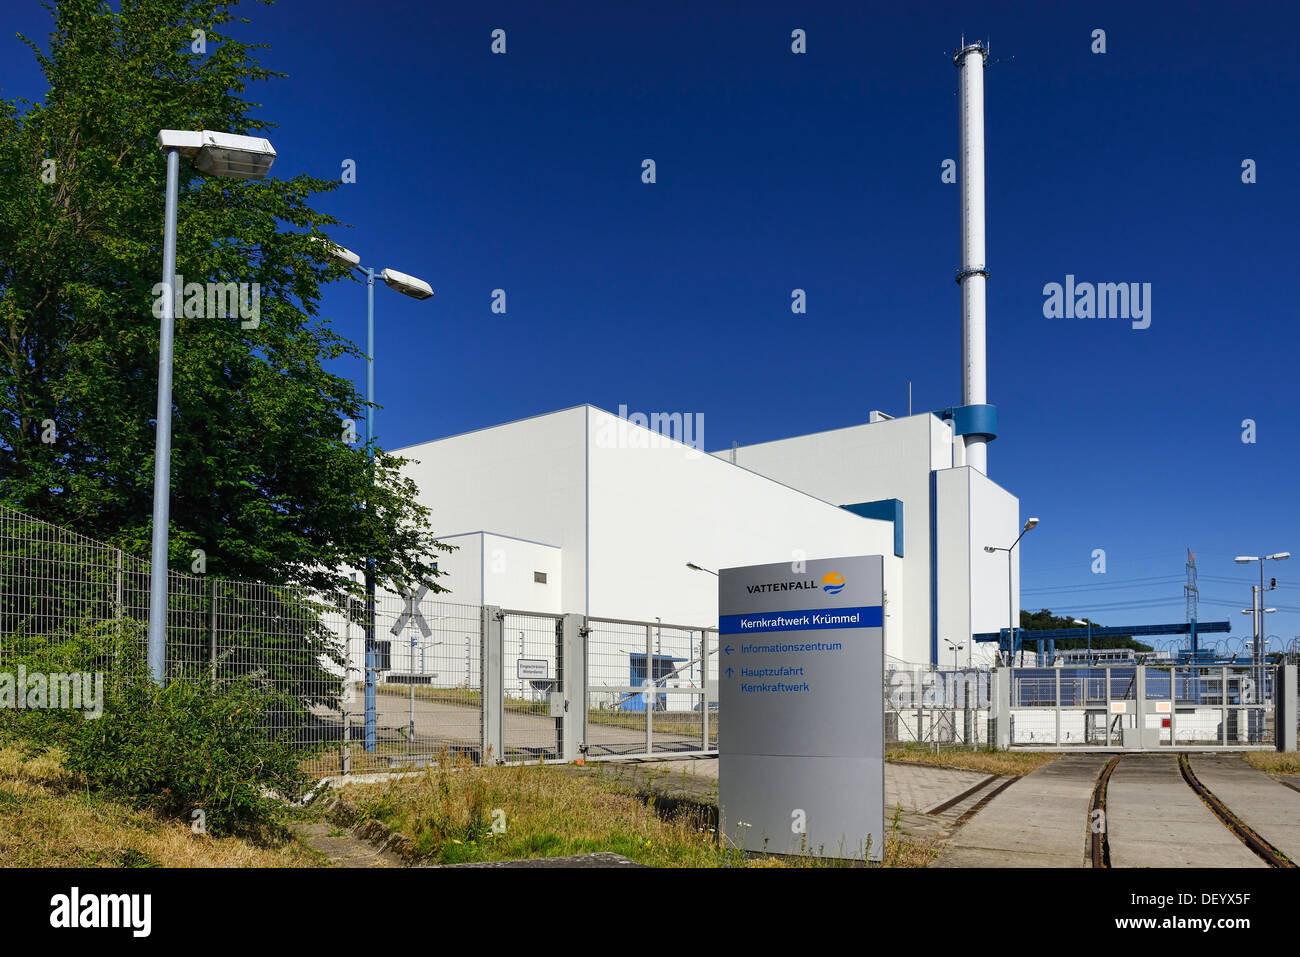 Atomkraftwerk Kruemmel in Geesthacht, Schleswig - Holstein, Deutschland, Europa, Abgeschaltetes Kernkraftwerk Krü ausgeschaltet Stockfoto